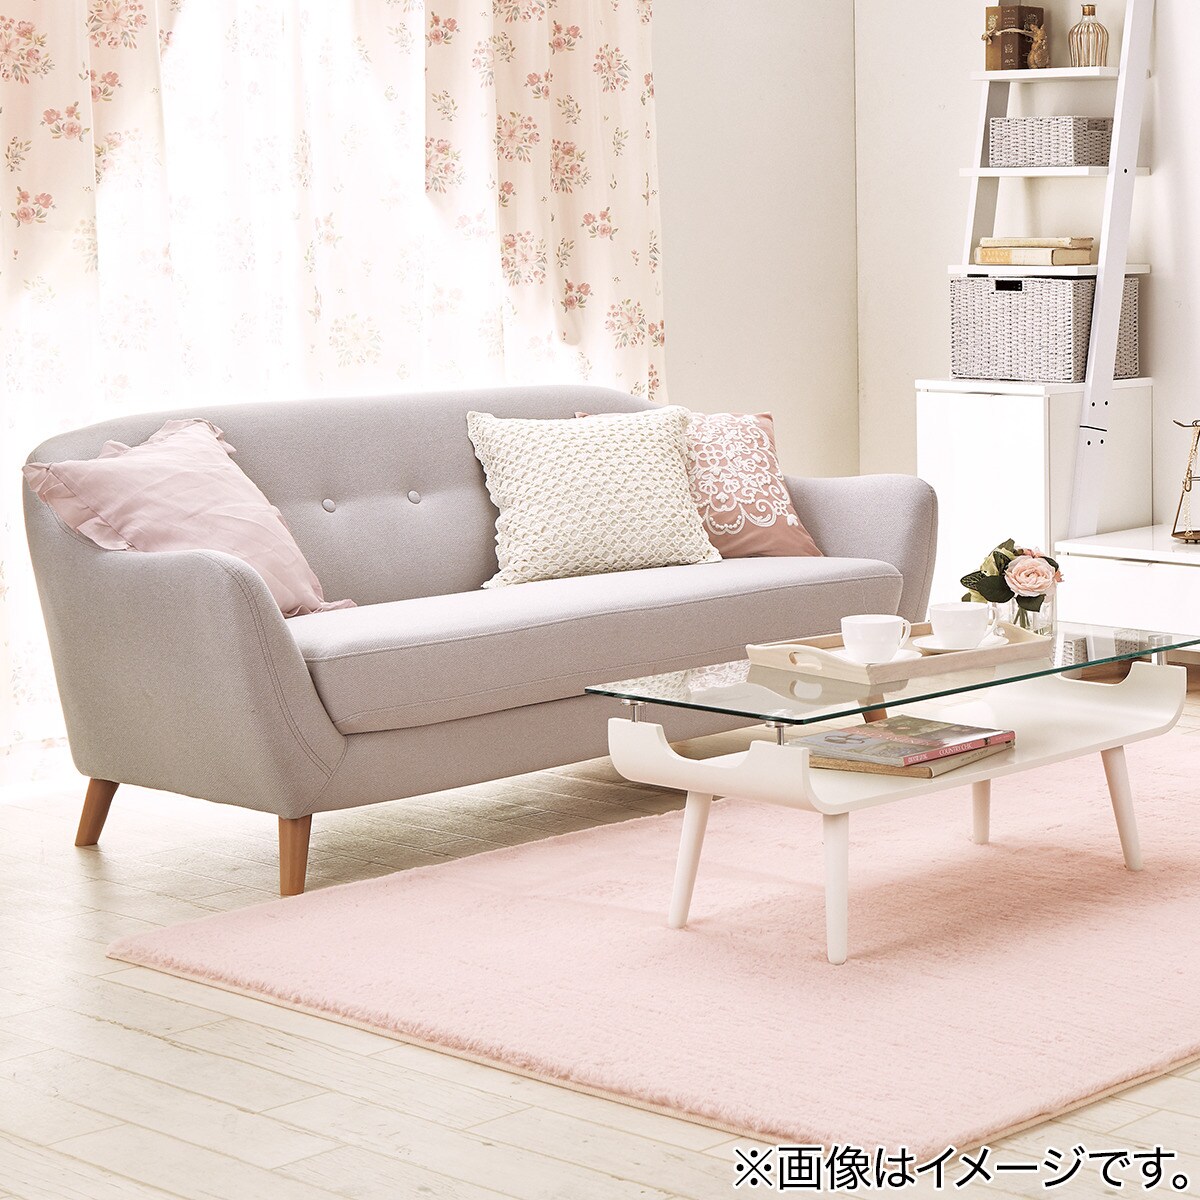 クッションカバー(フリル2 45×45cm)通販 ニトリネット【公式】 家具・インテリア通販